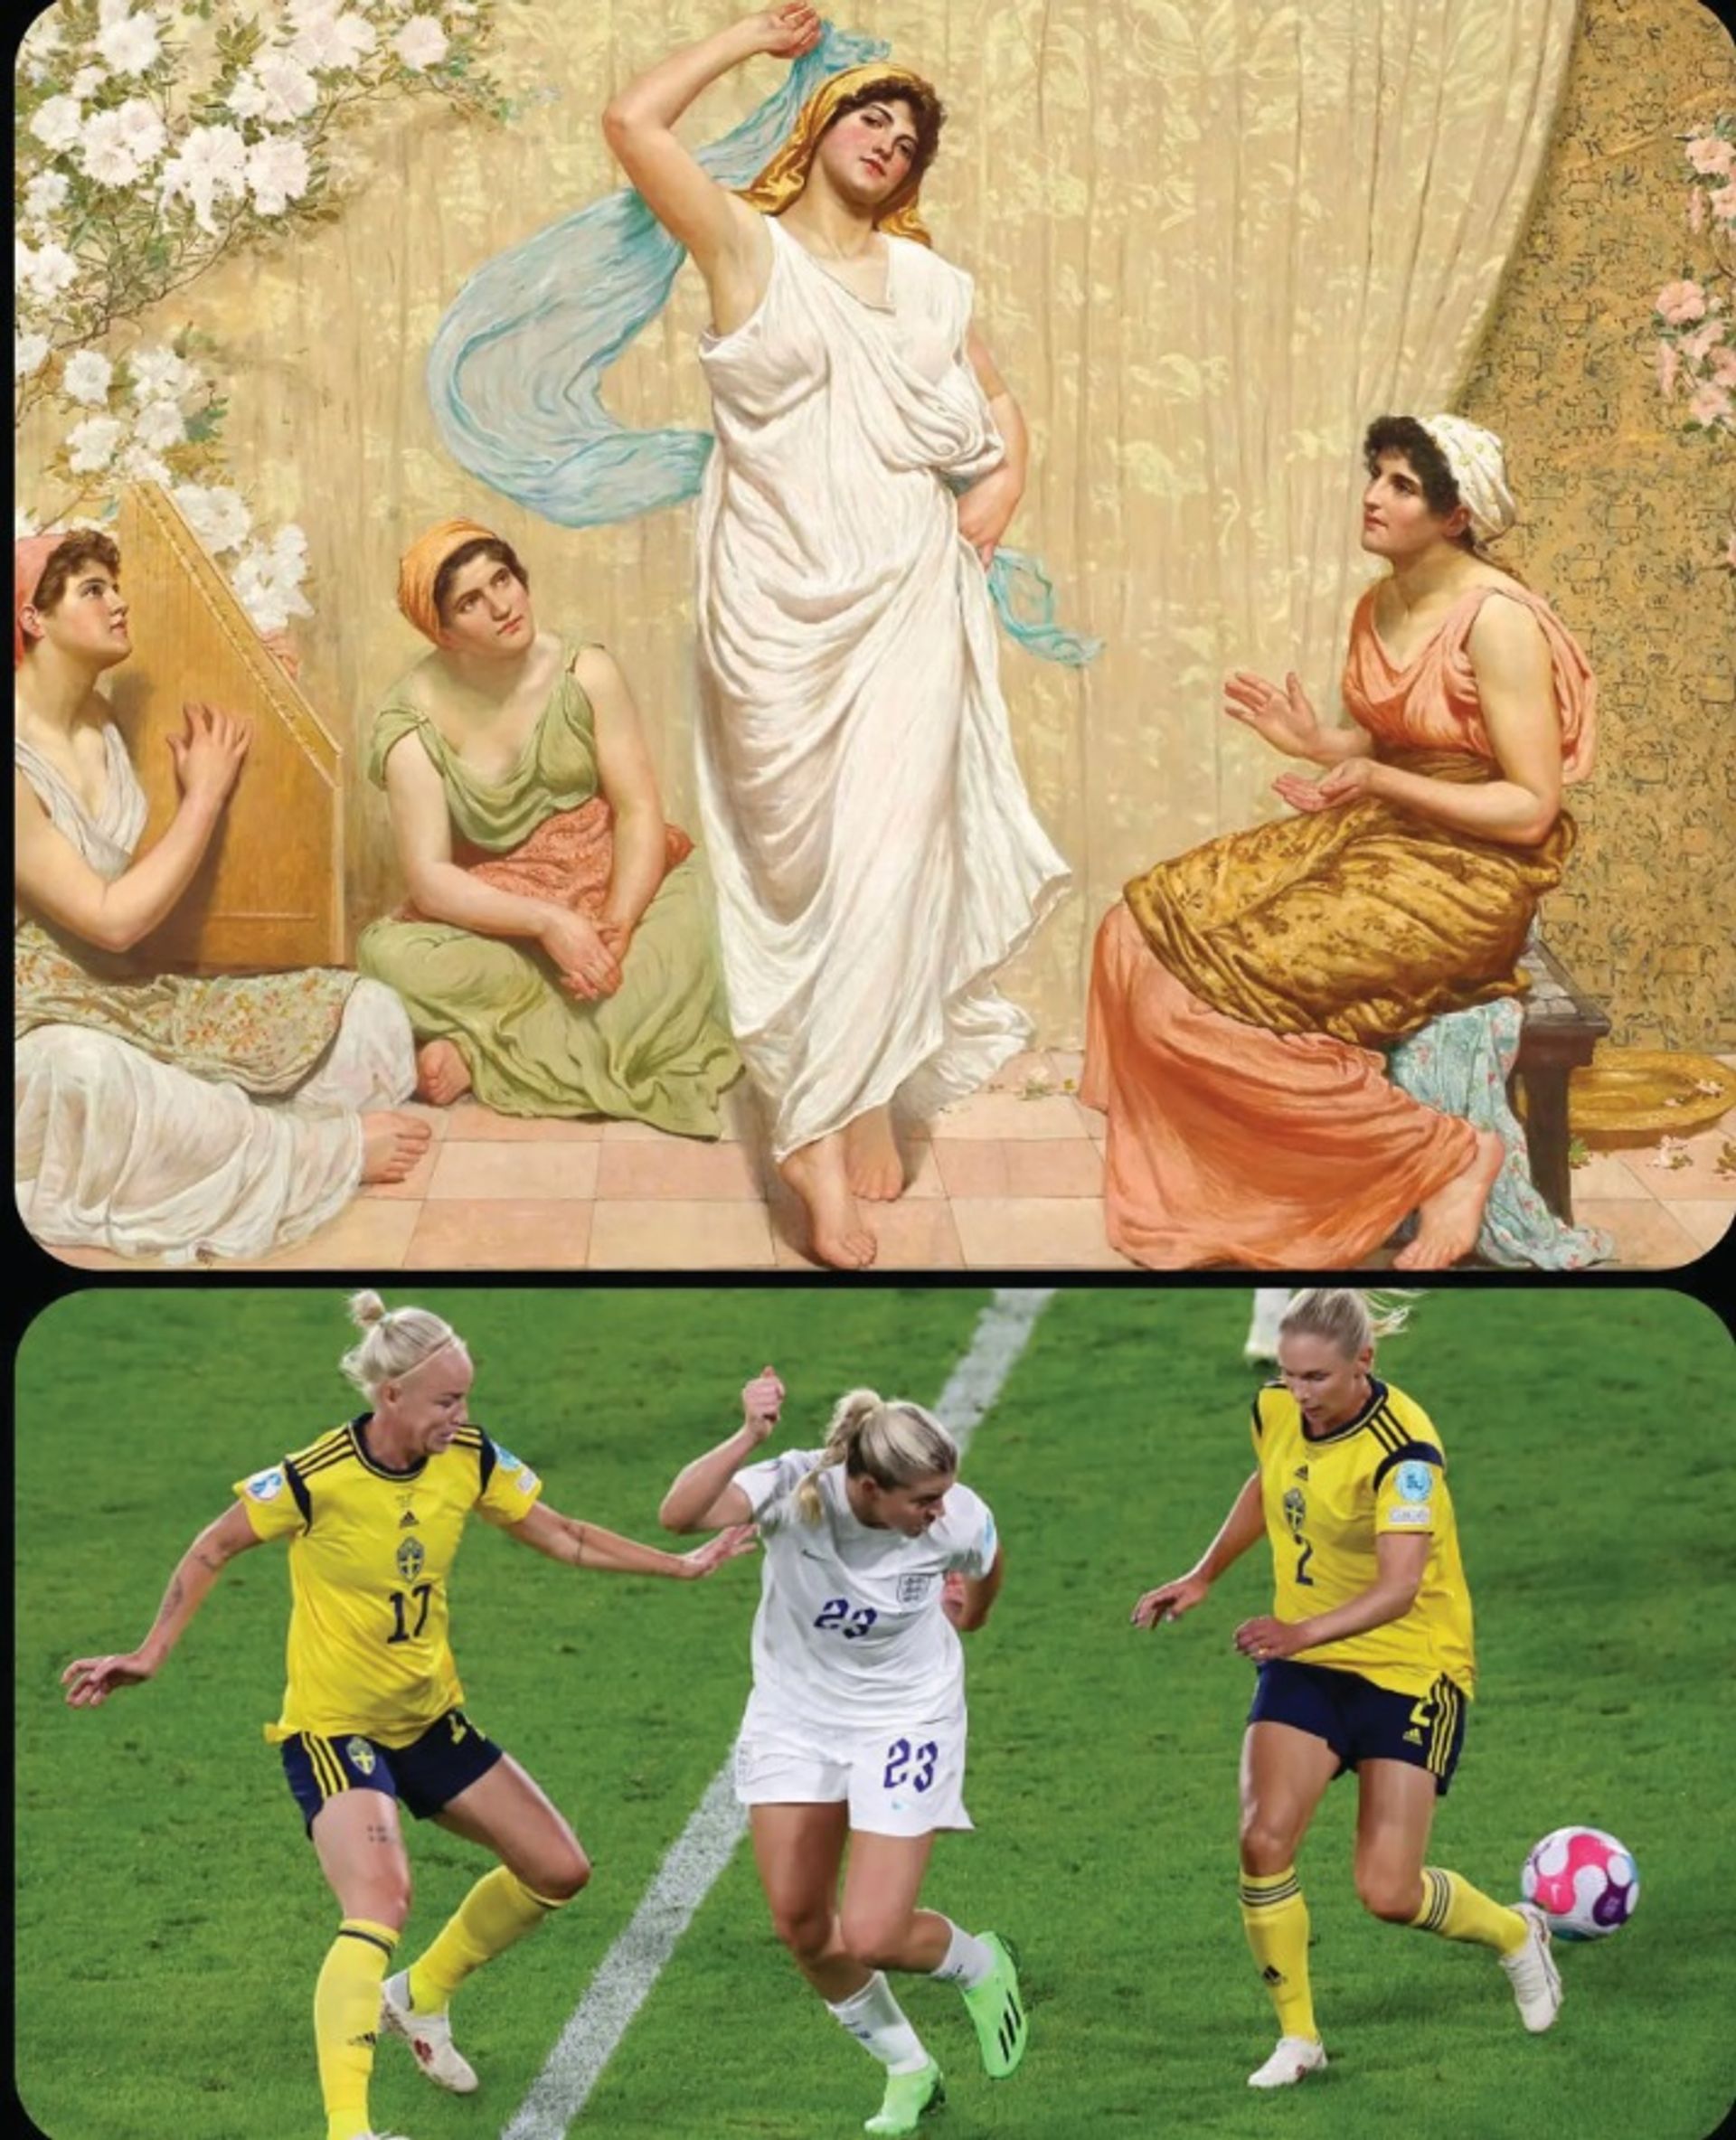 דופקים פוזה: עבור חשבון האינסטגרם שלו, Art But Make It Sports, L.J. Rader שילב את Dance of Salome (1885) של רוברט פאולר עם תמונה של השער המדהים, מוקדם יותר השנה, של שחקנית הכדורגל האנגליה אלסיה רוסו במשחק נגד שוודיה, בחצי גמר היורו לנשים

רוברט פאולר; Dance of Salome ; 1885; צילום: © BarclaysWSL. קרדיט: @artbutmakeitsports